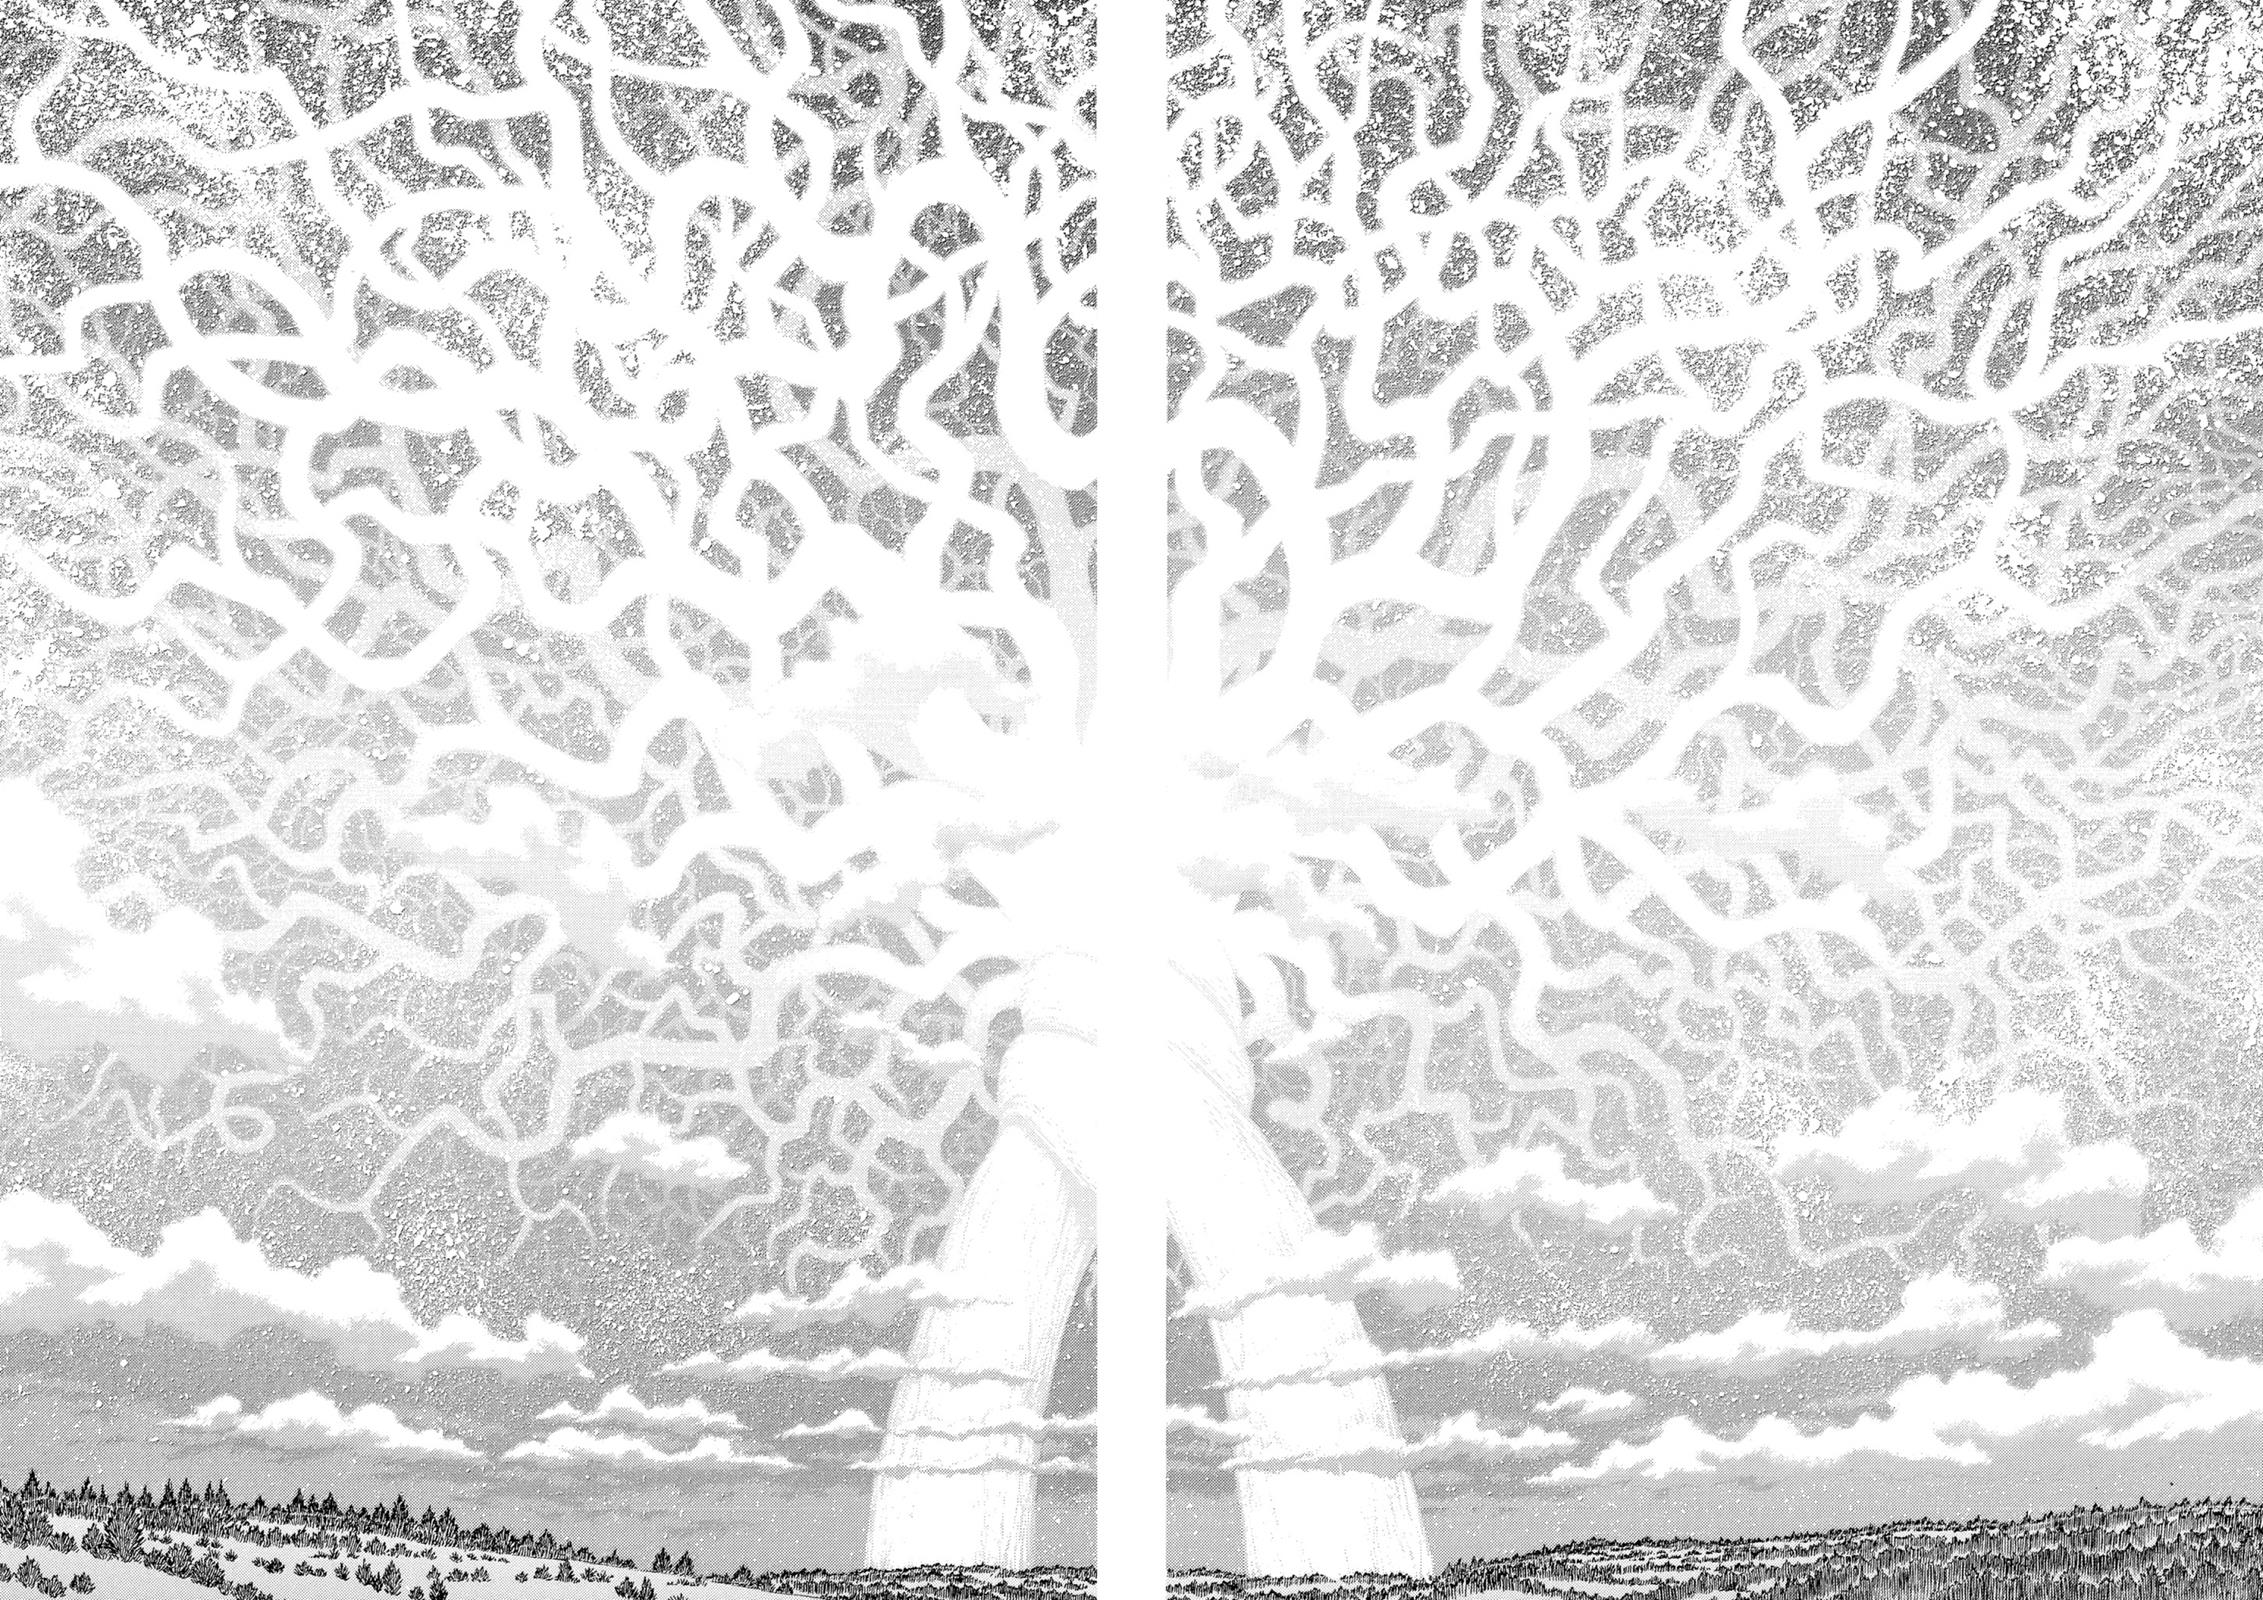 Berserk Manga Chapter 307 image 14